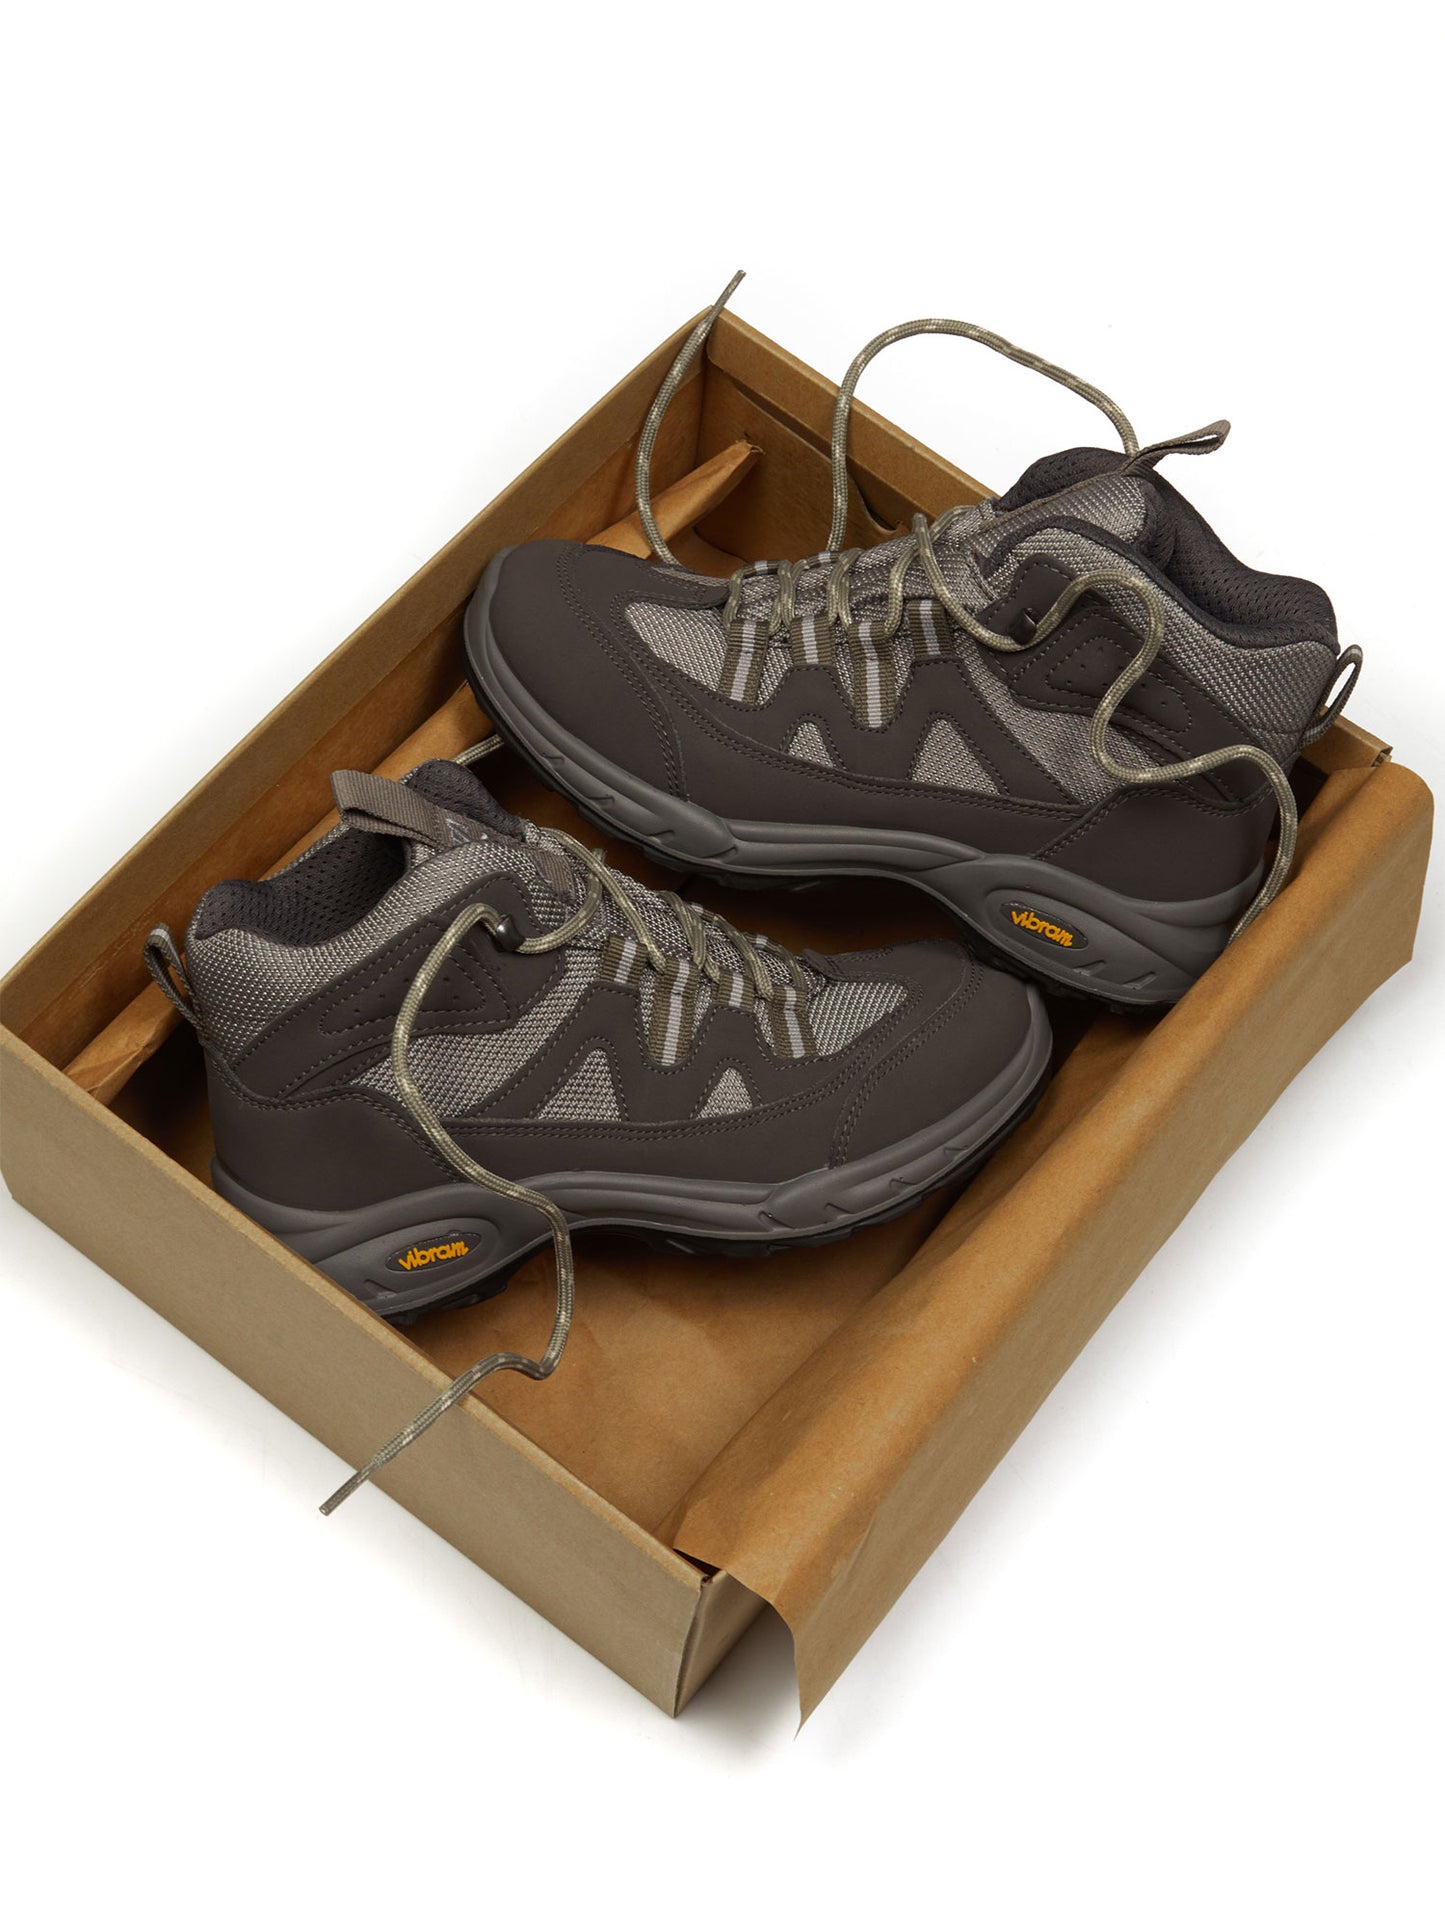 Bottes de randonnée imperméables WVSport Sequoia Edition 